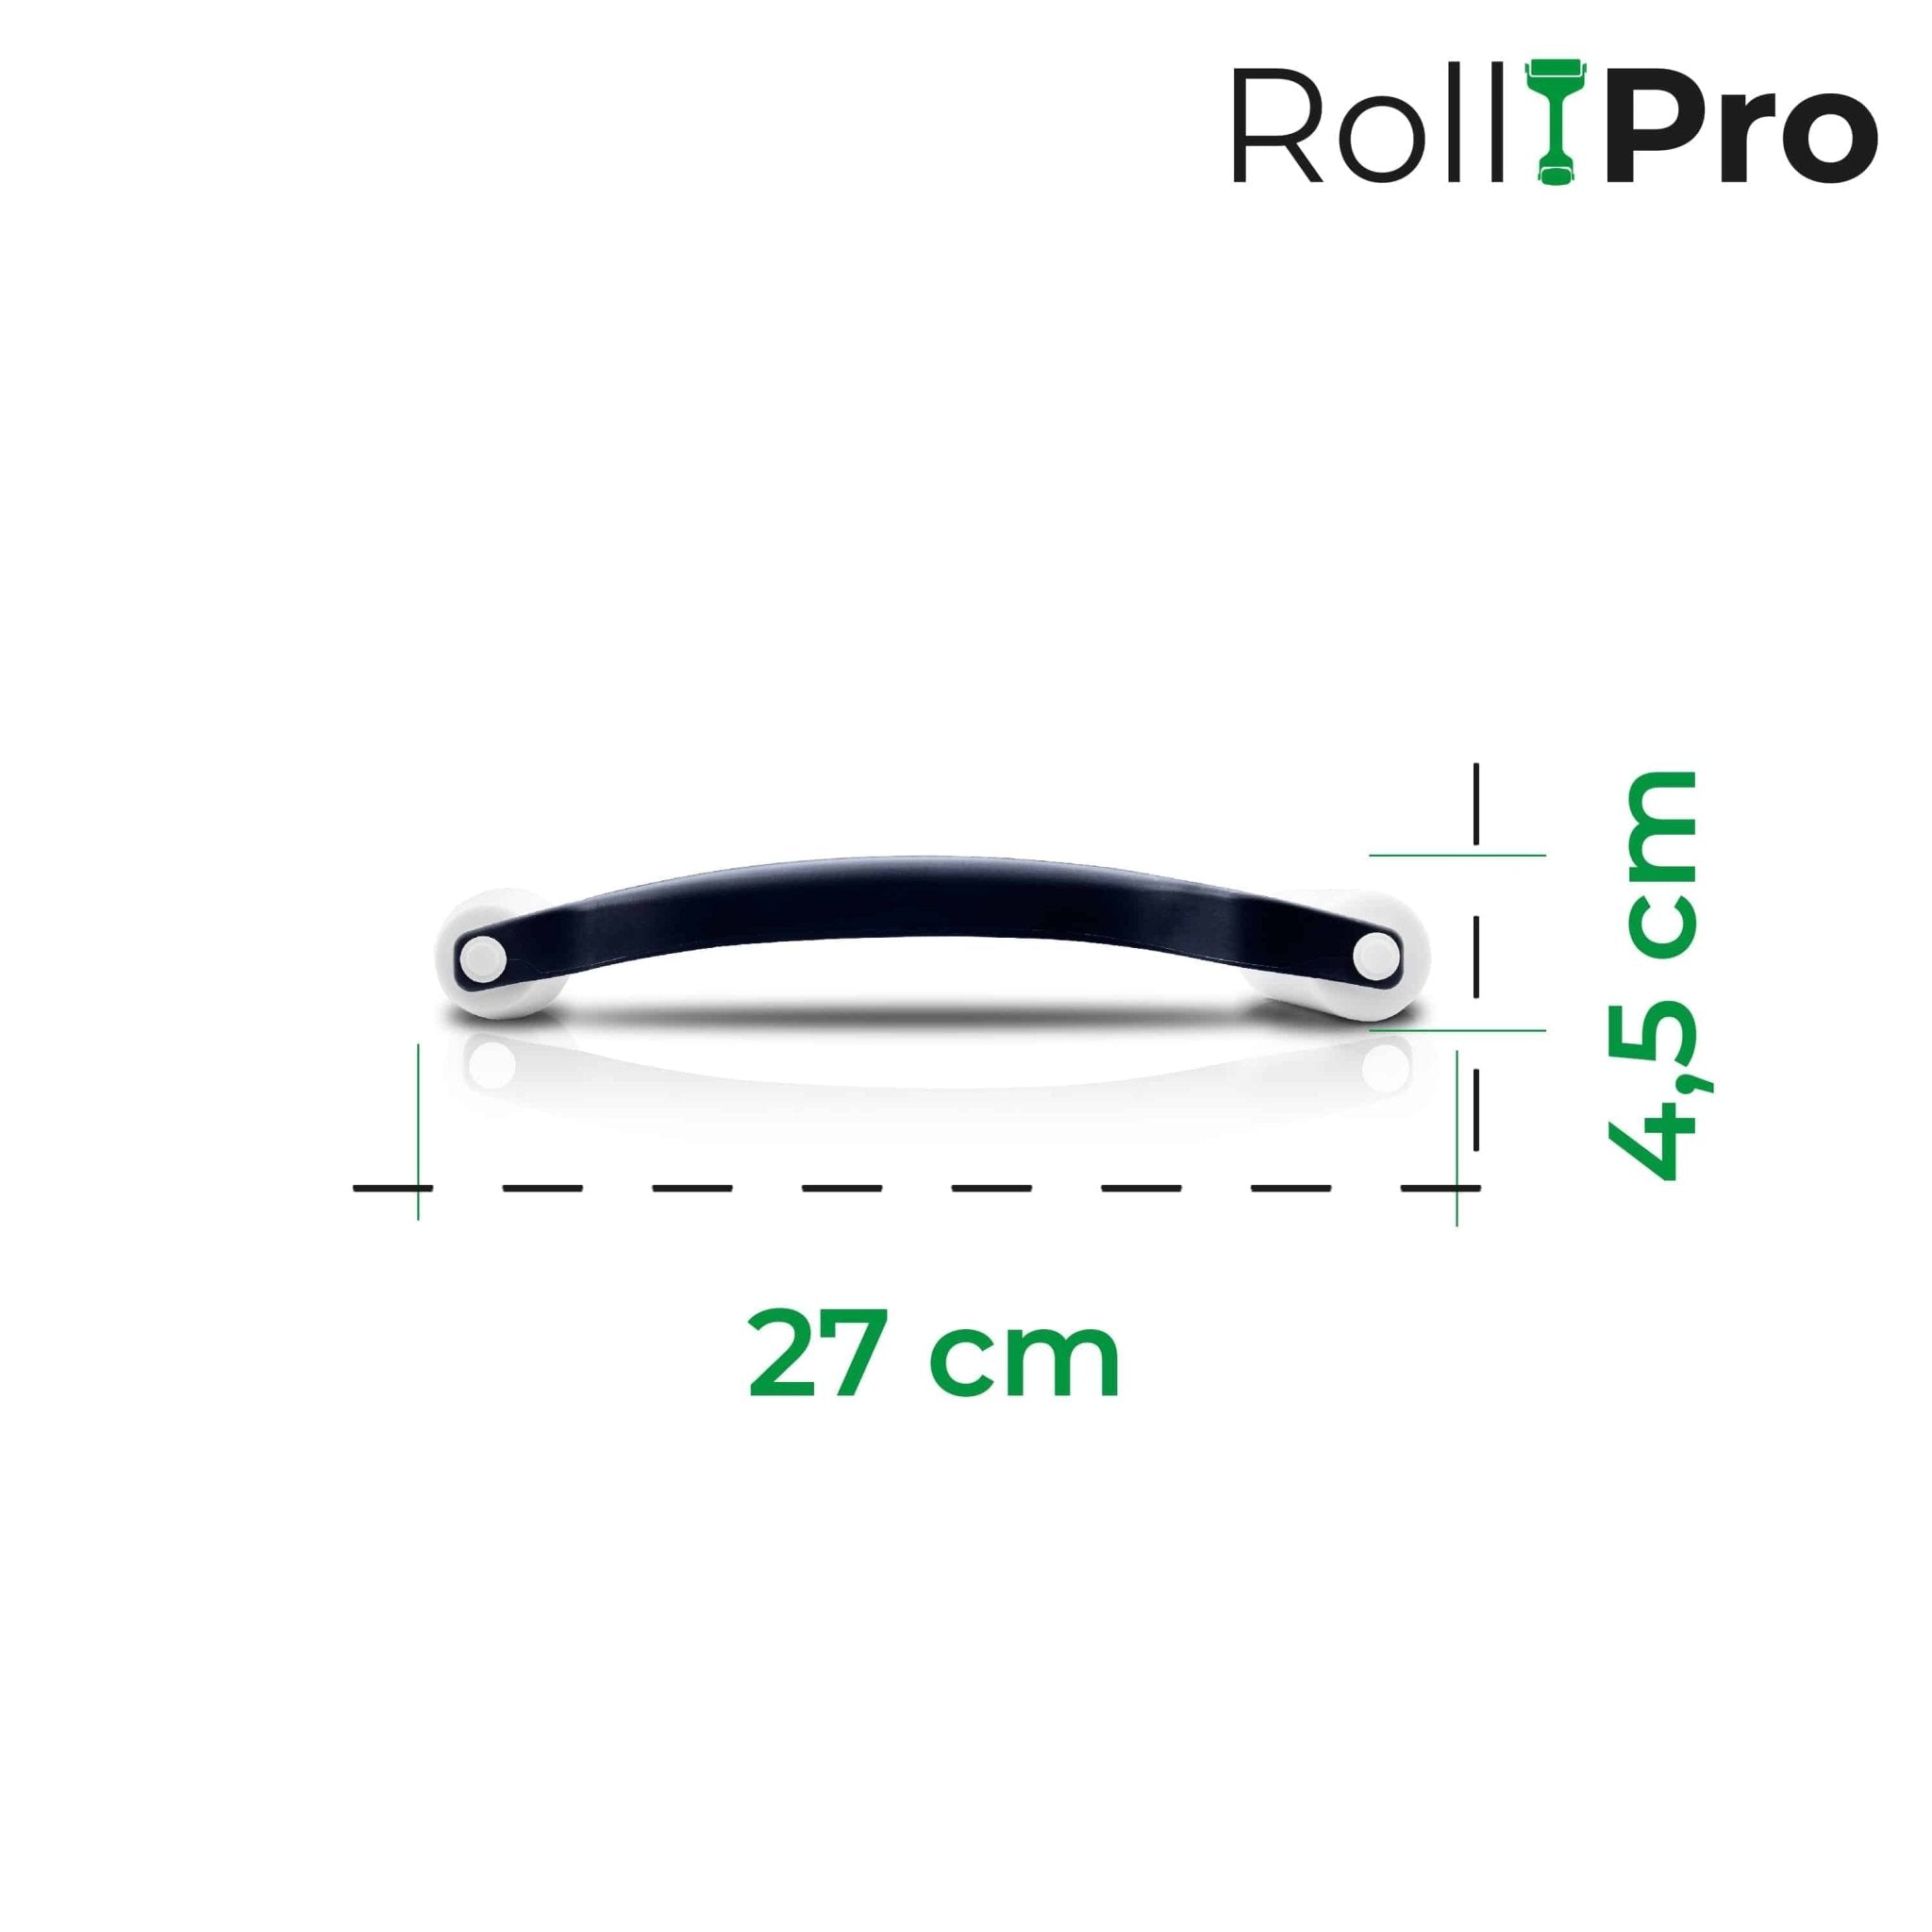 RollPro | Teigroller mit zwei unterschiedlich großen Walzen - Wundermix GmbH